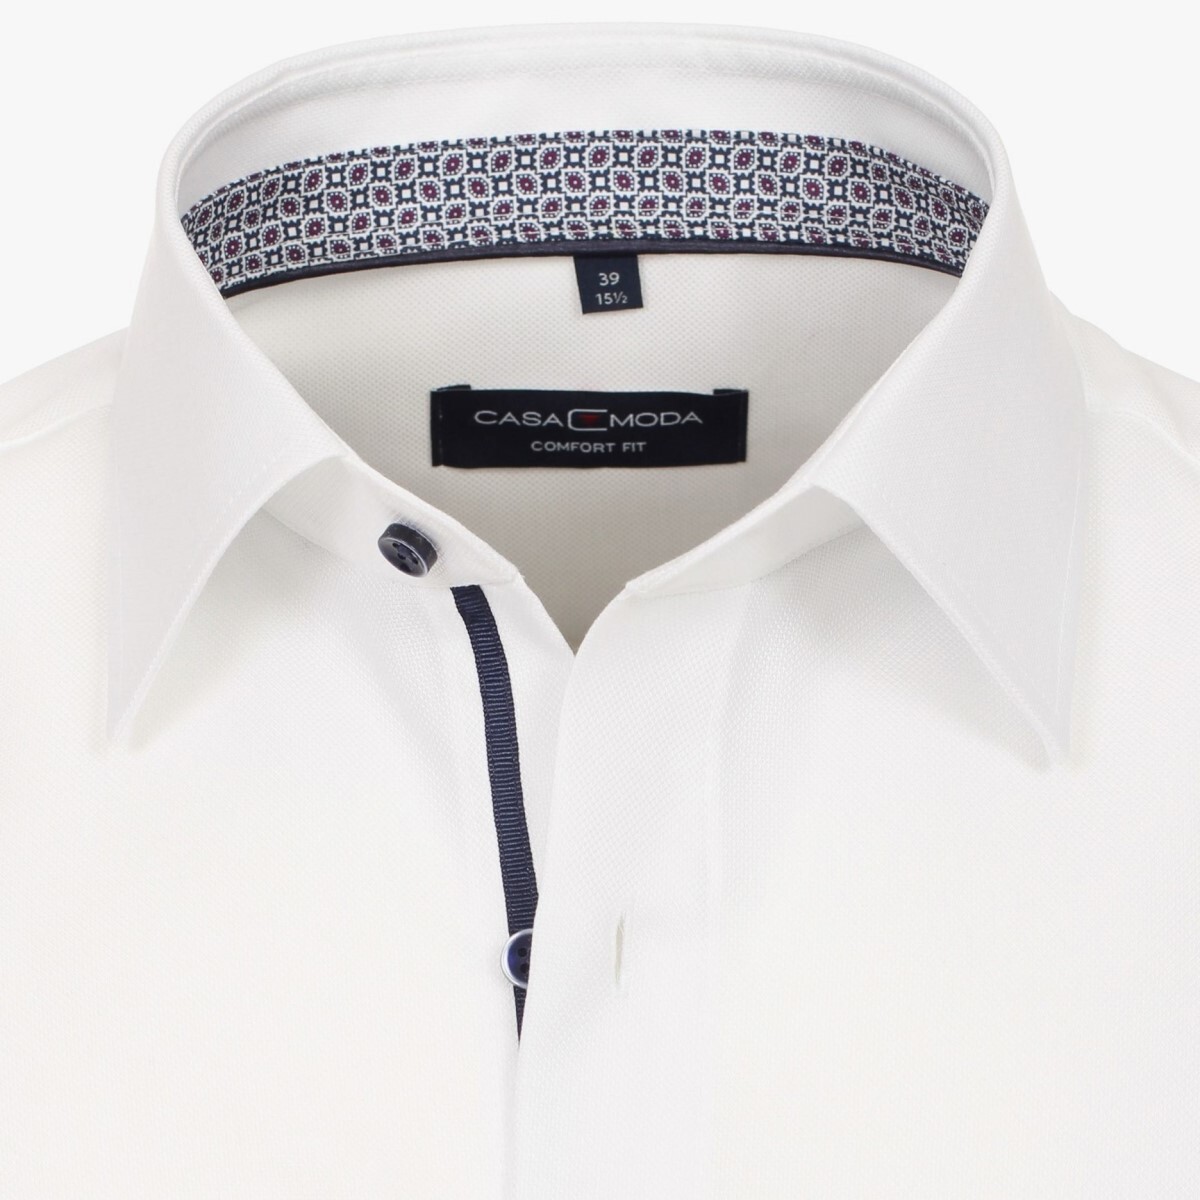 Сорочка мужская Casamoda Comfort Fit 303523000-000 цвет Белый